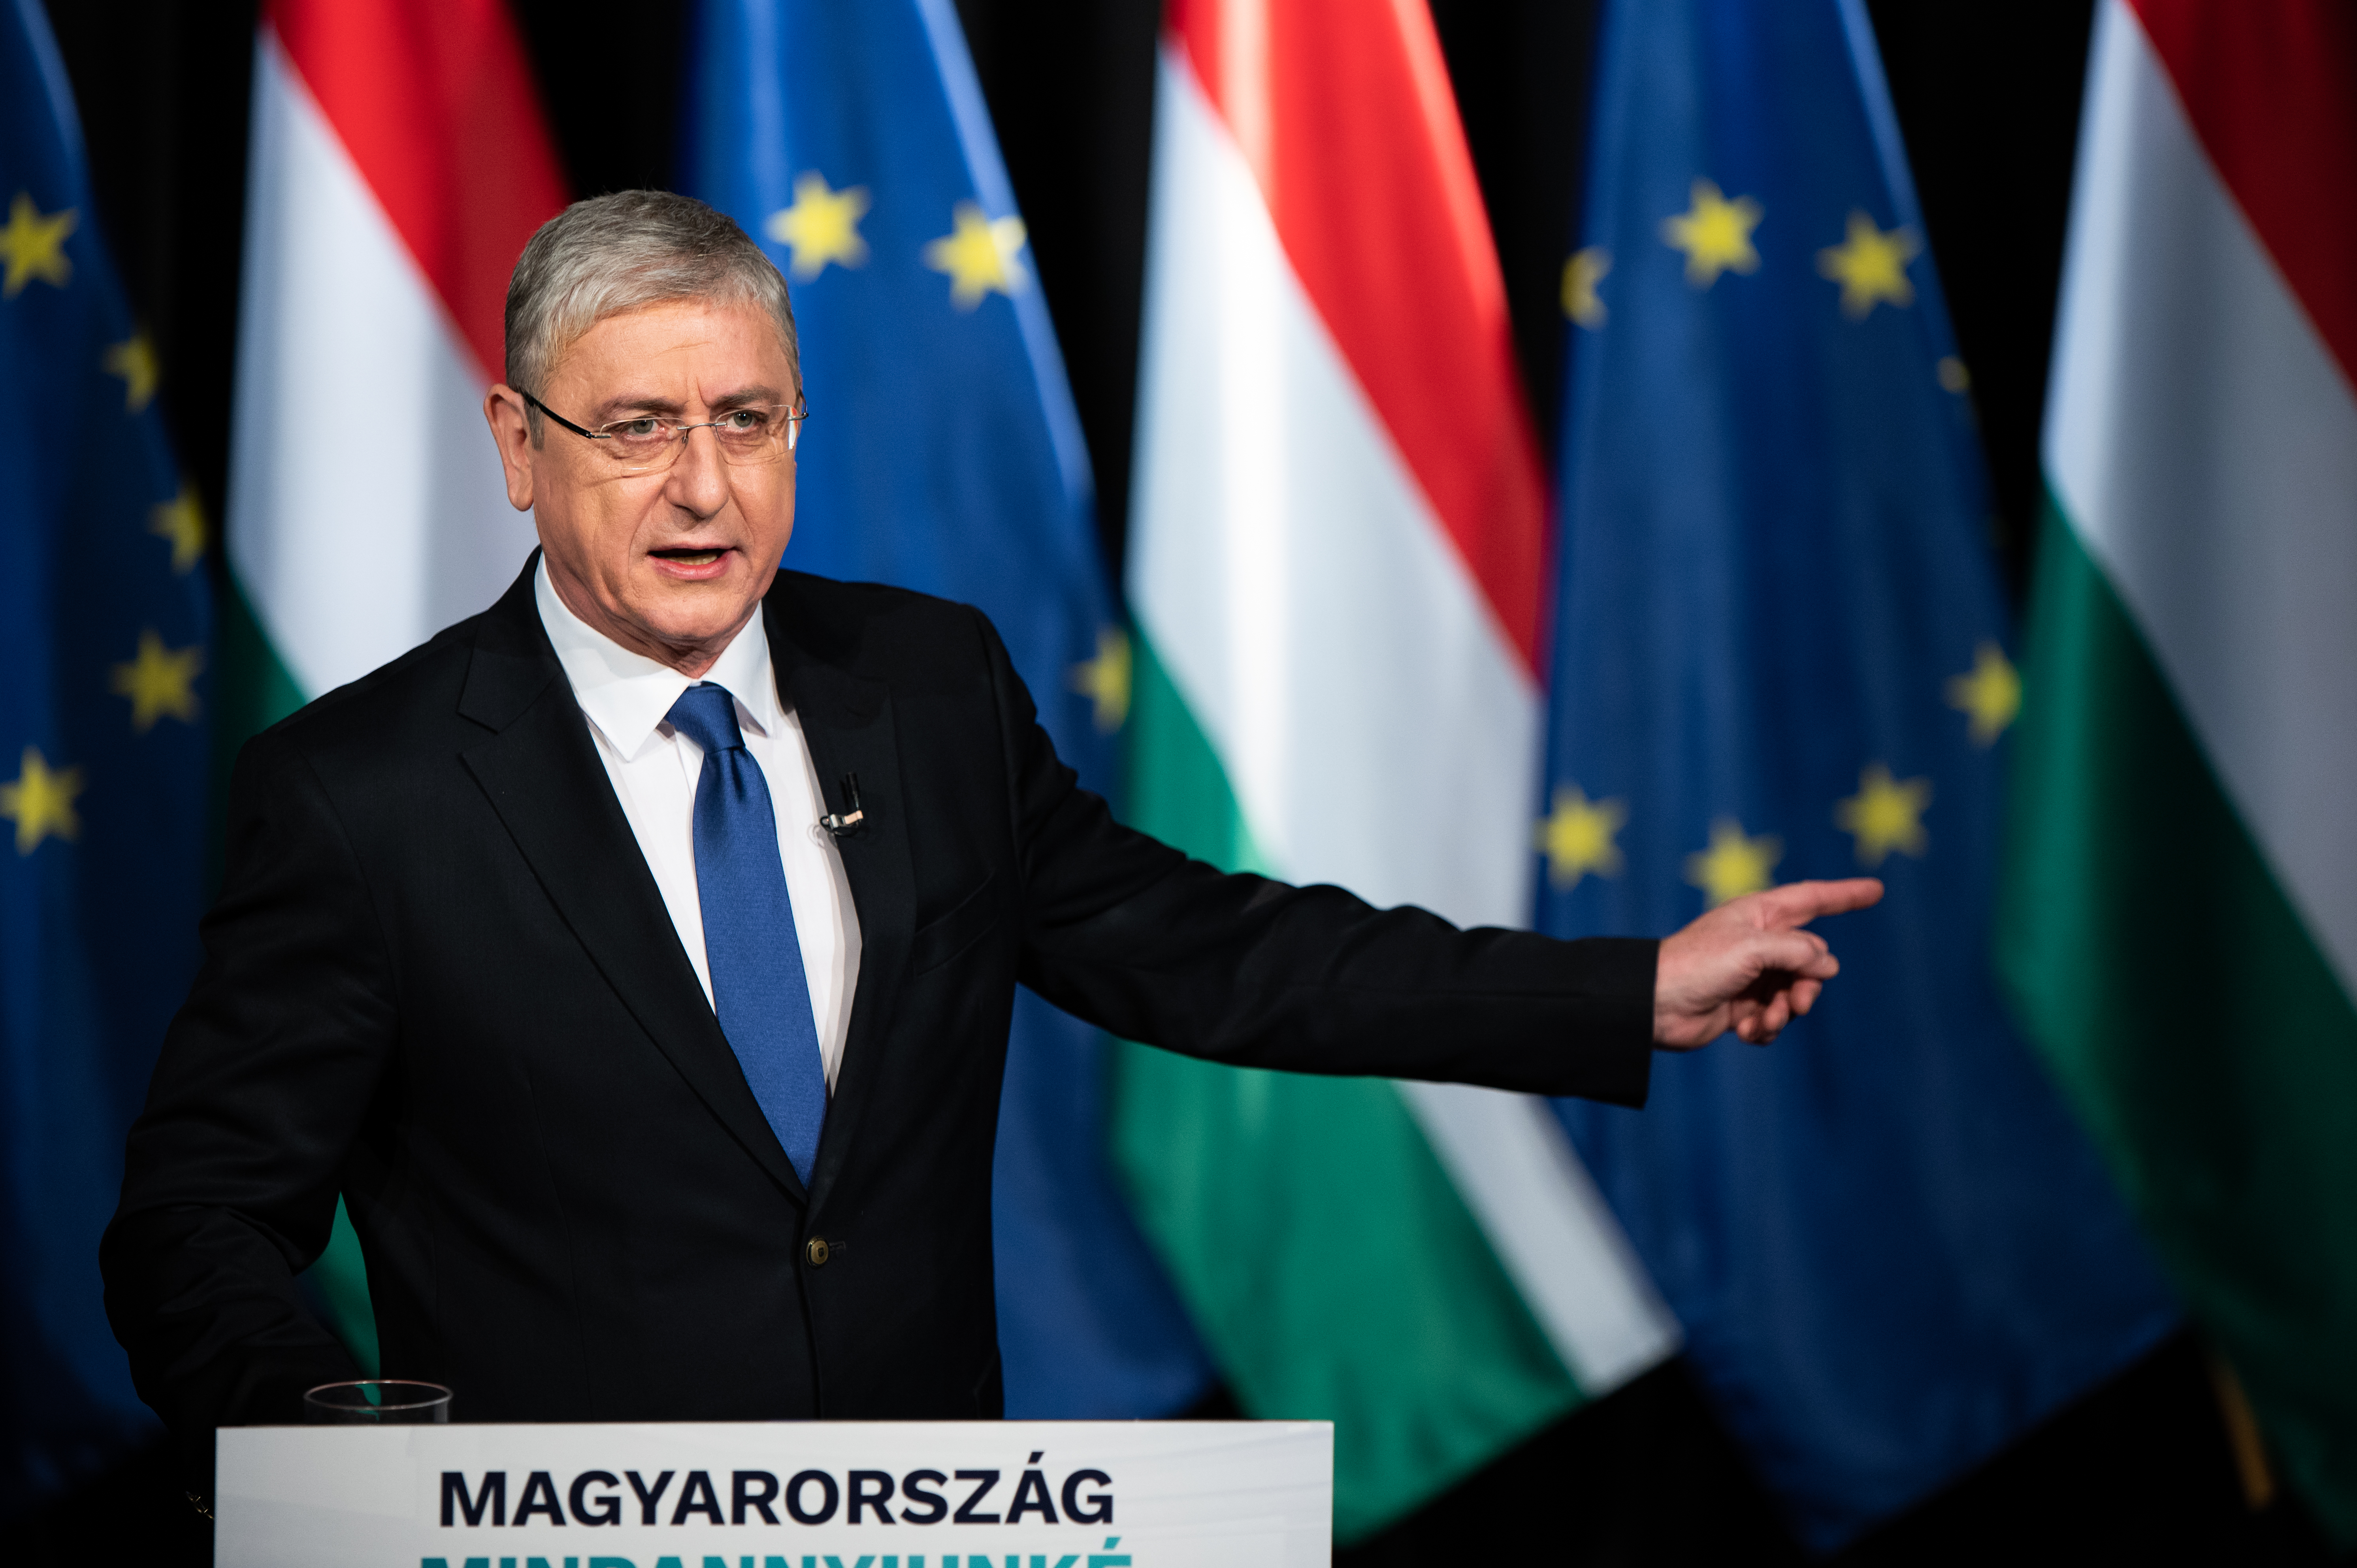 Gyurcsány lebetegezte Orbánt a hitleres beszéd miatt